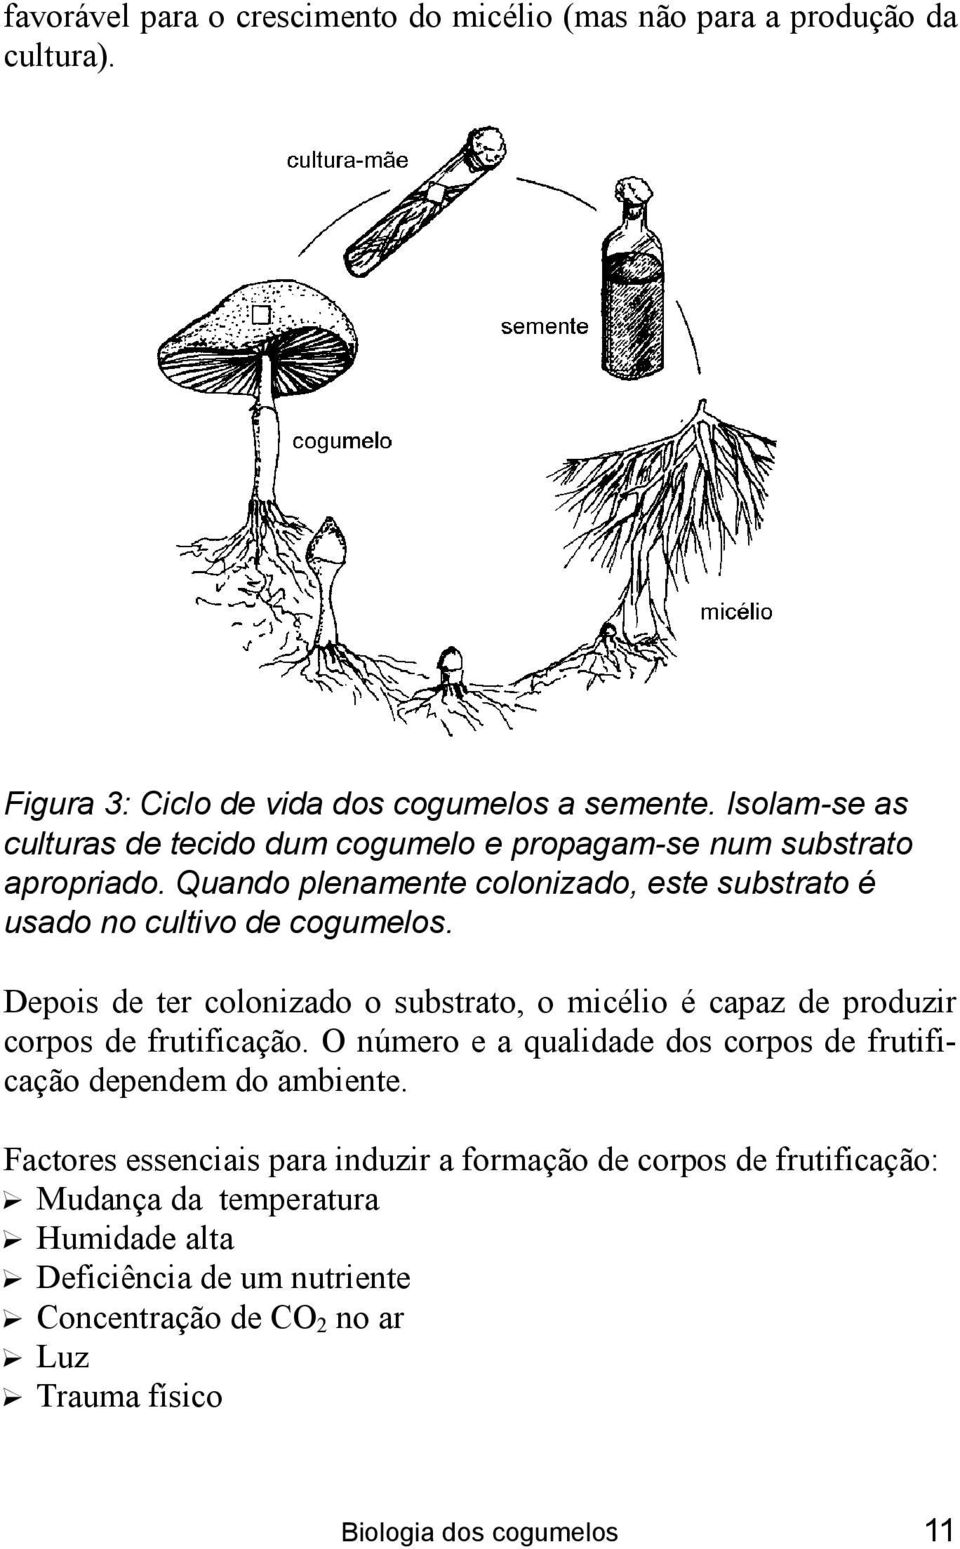 Depois de ter colonizado o substrato, o micélio é capaz de produzir corpos de frutificação. O número e a qualidade dos corpos de frutificação dependem do ambiente.